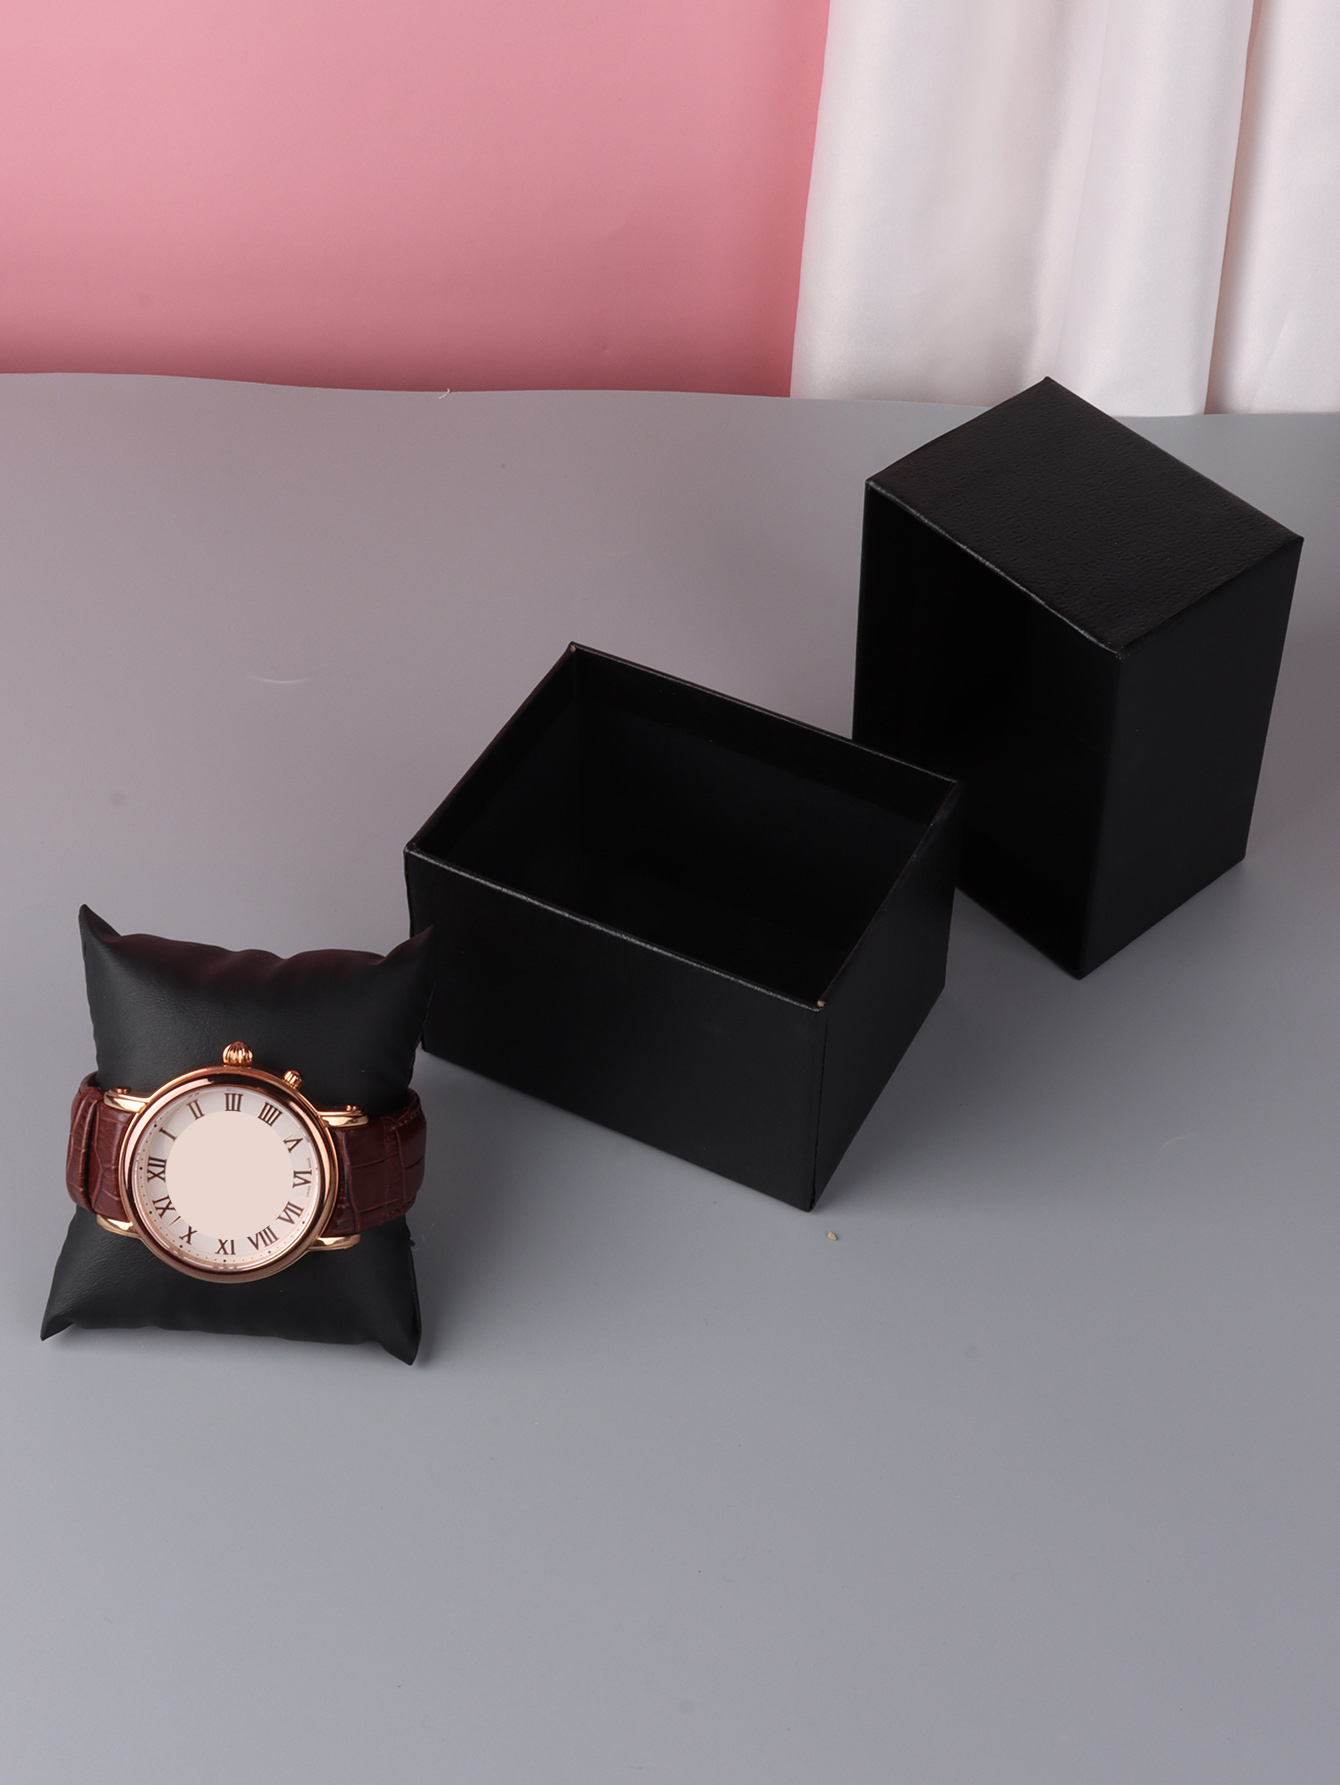 GENERICO caja de regalo cartón y almohadilla para reloj o pulsera